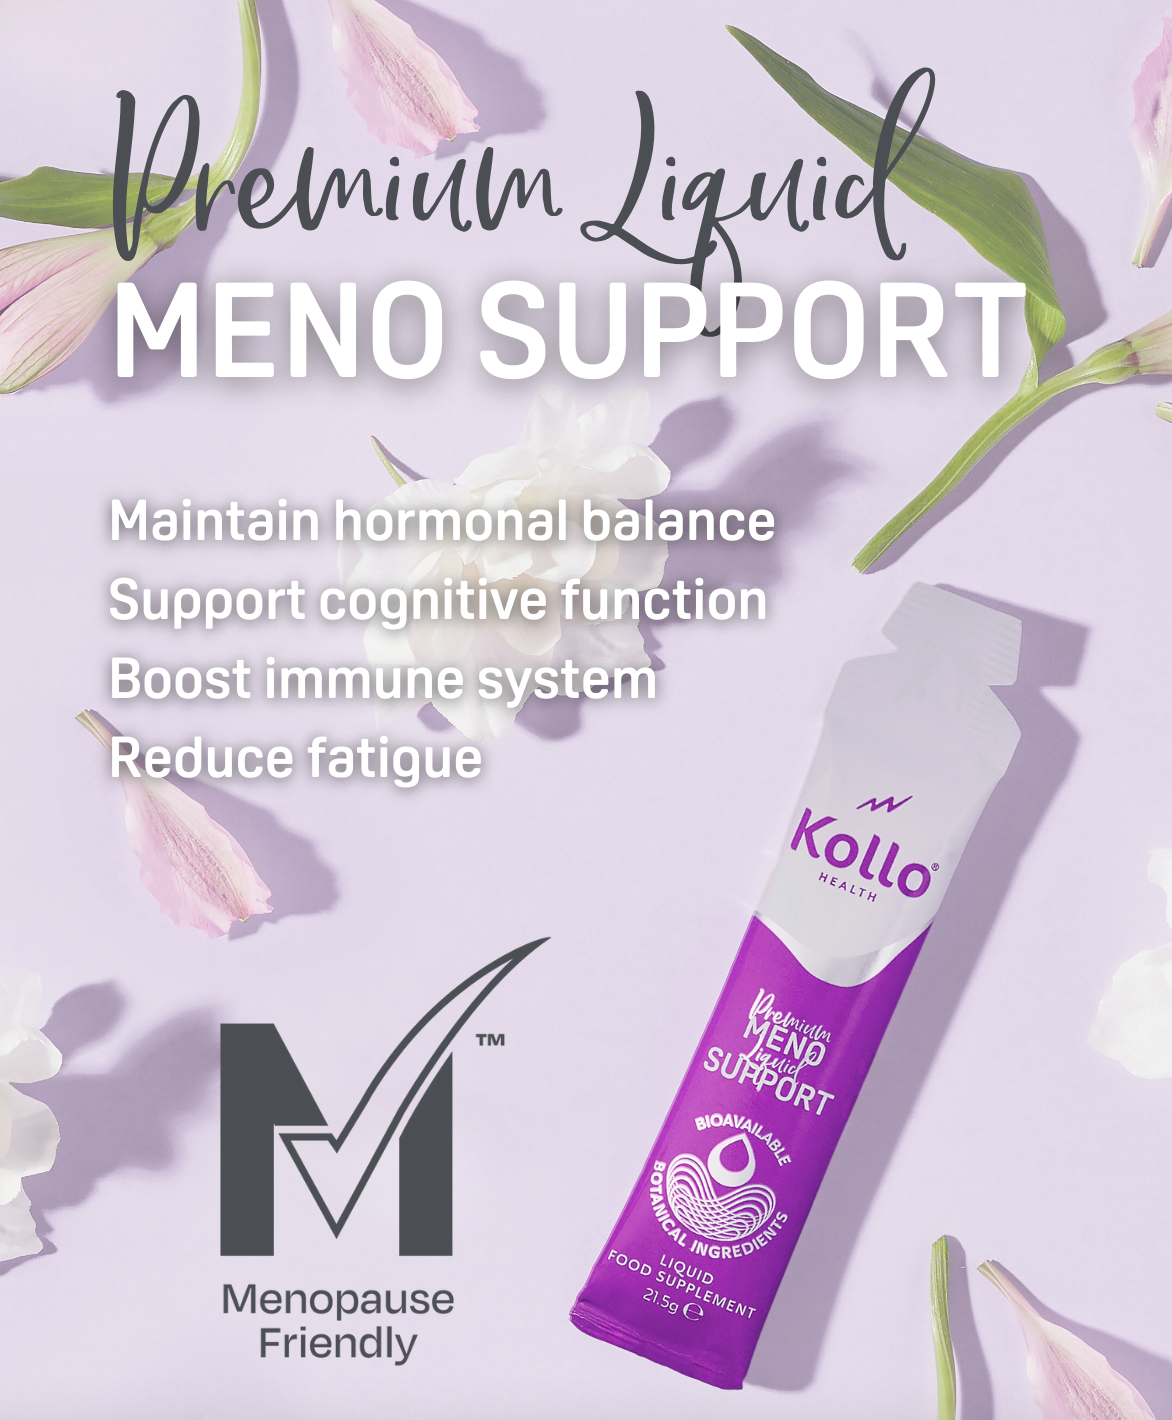 Premium Liquid Meno Support